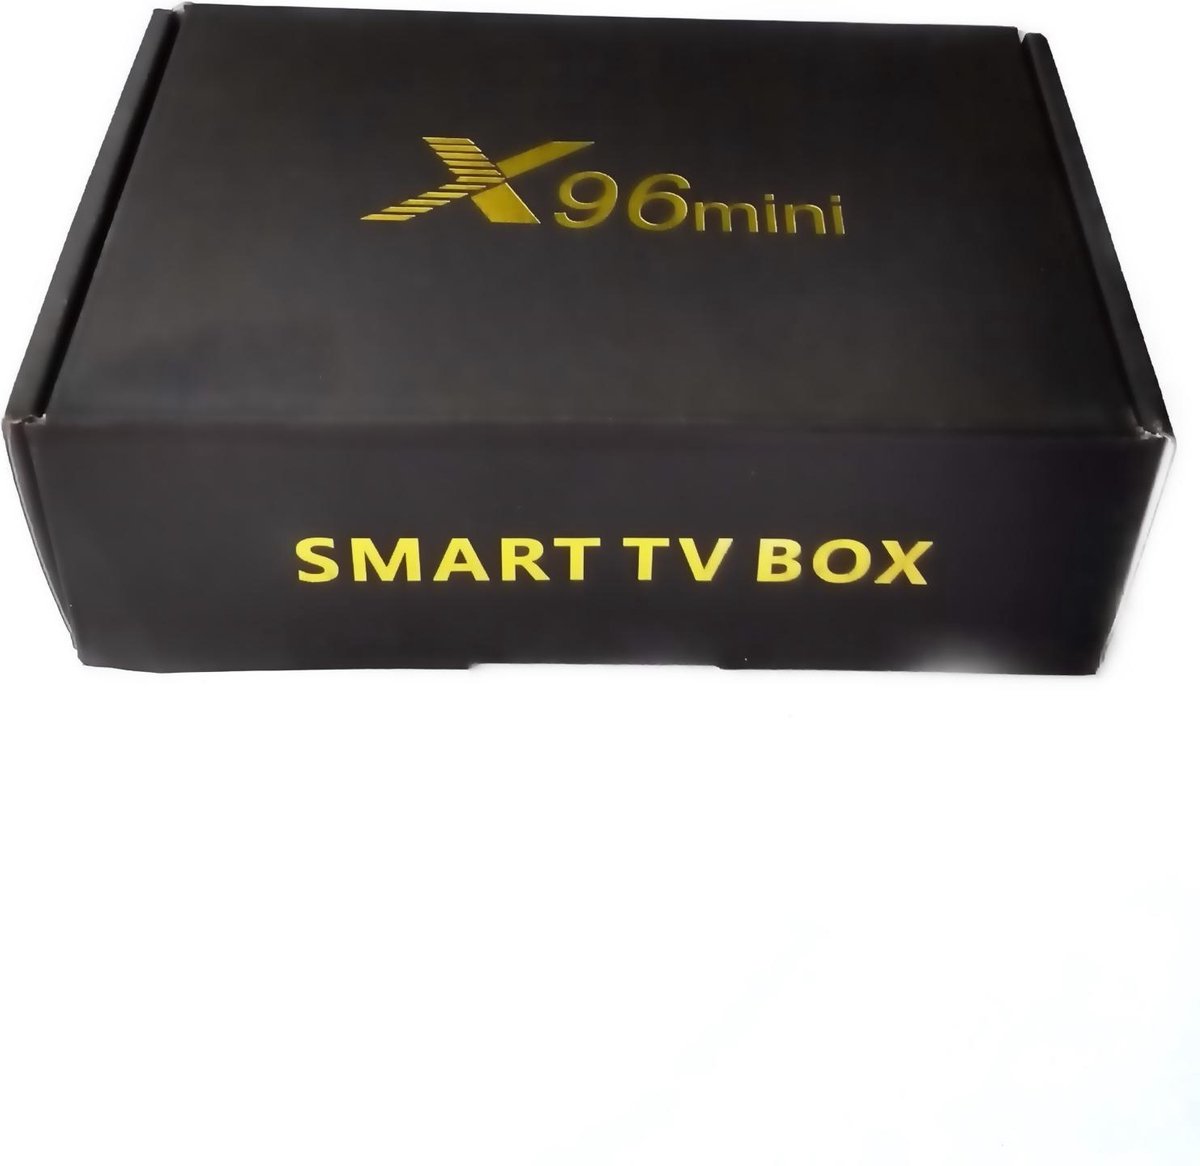 X96 mini smart TV box met 2GB Ram en 16GB ROM - X96 mini